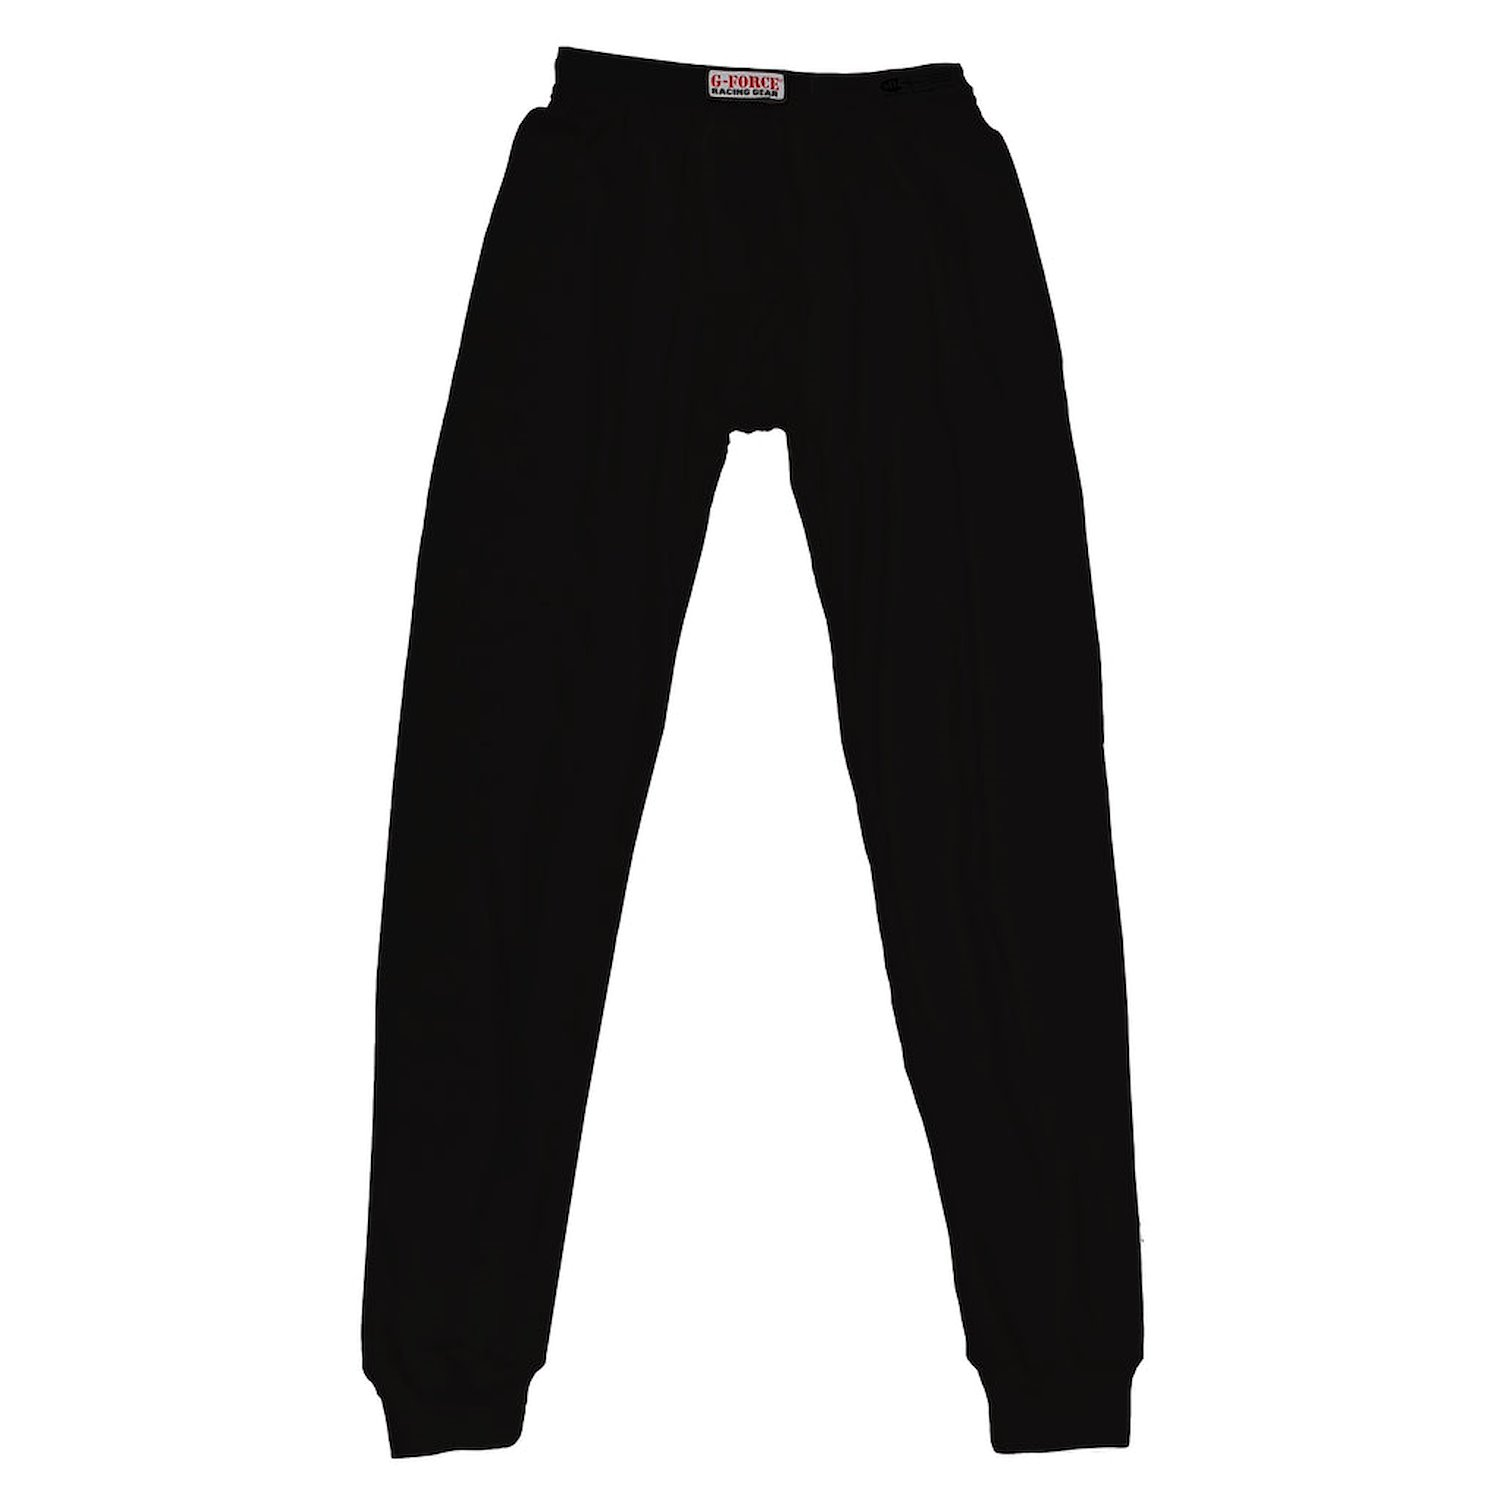 4161XXLBK Underwear Pants, 2XL, Black